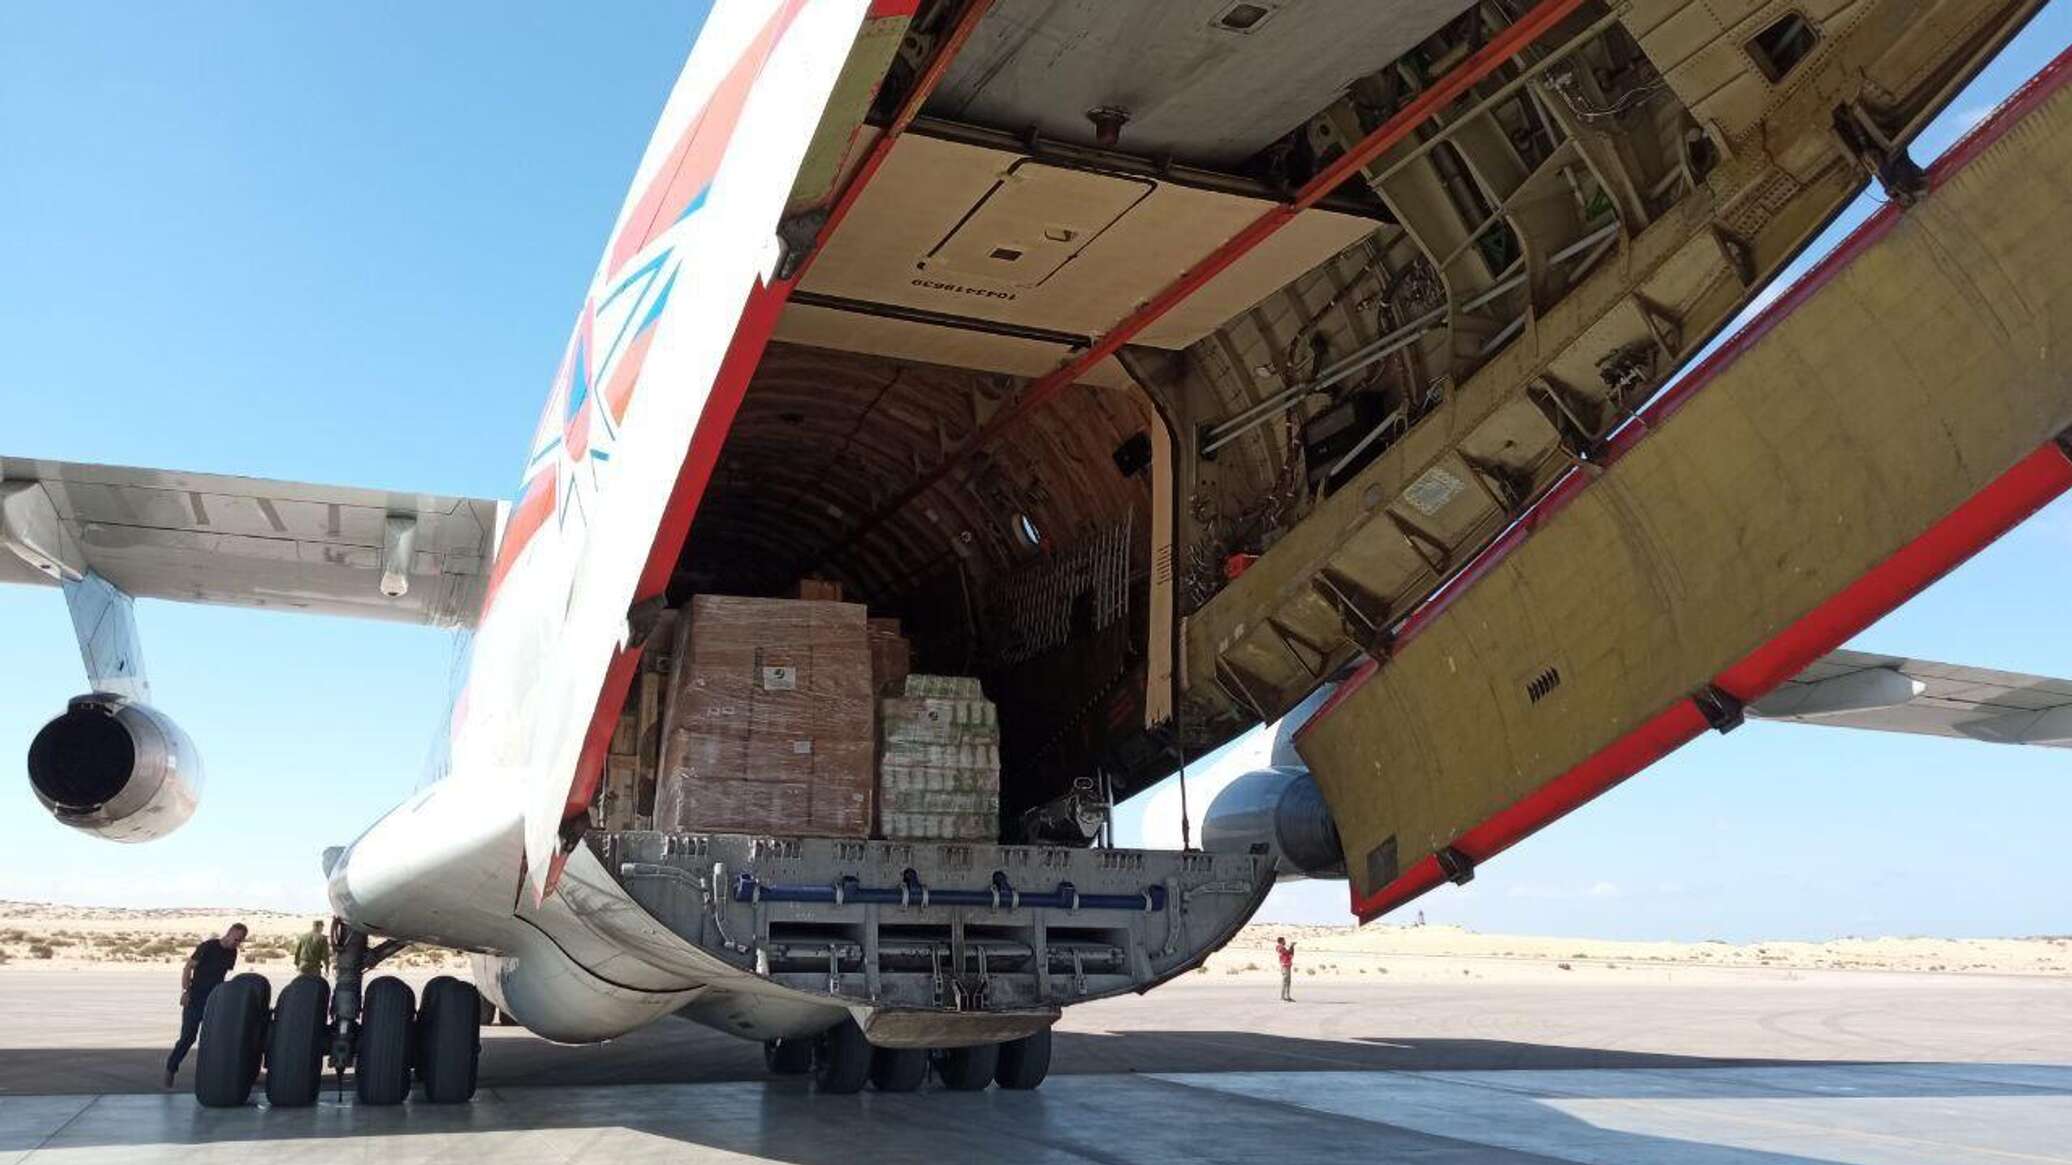 رئيس الهلال الأحمر في سيناء لـ"سبوتنيك": استلمنا طائرة مساعدات روسية جديدة لغزة ونثمن دور موسكو